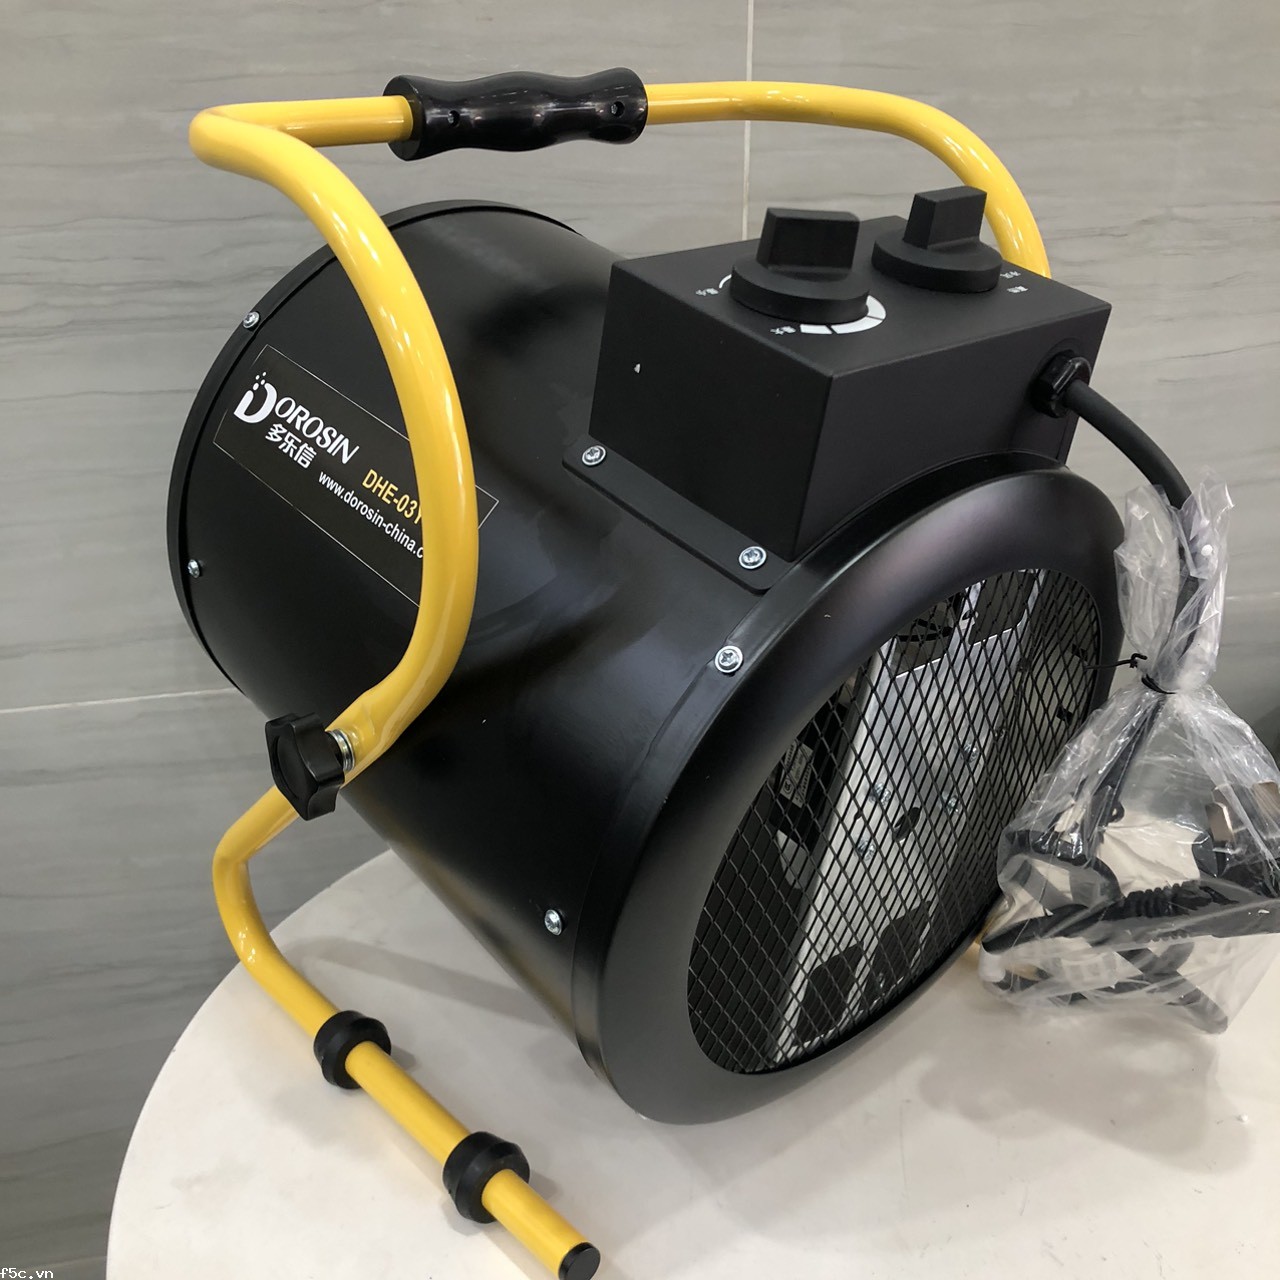 Máy sấy gió nóng công nghiệp Dorosin DHE-03Y (3KW)